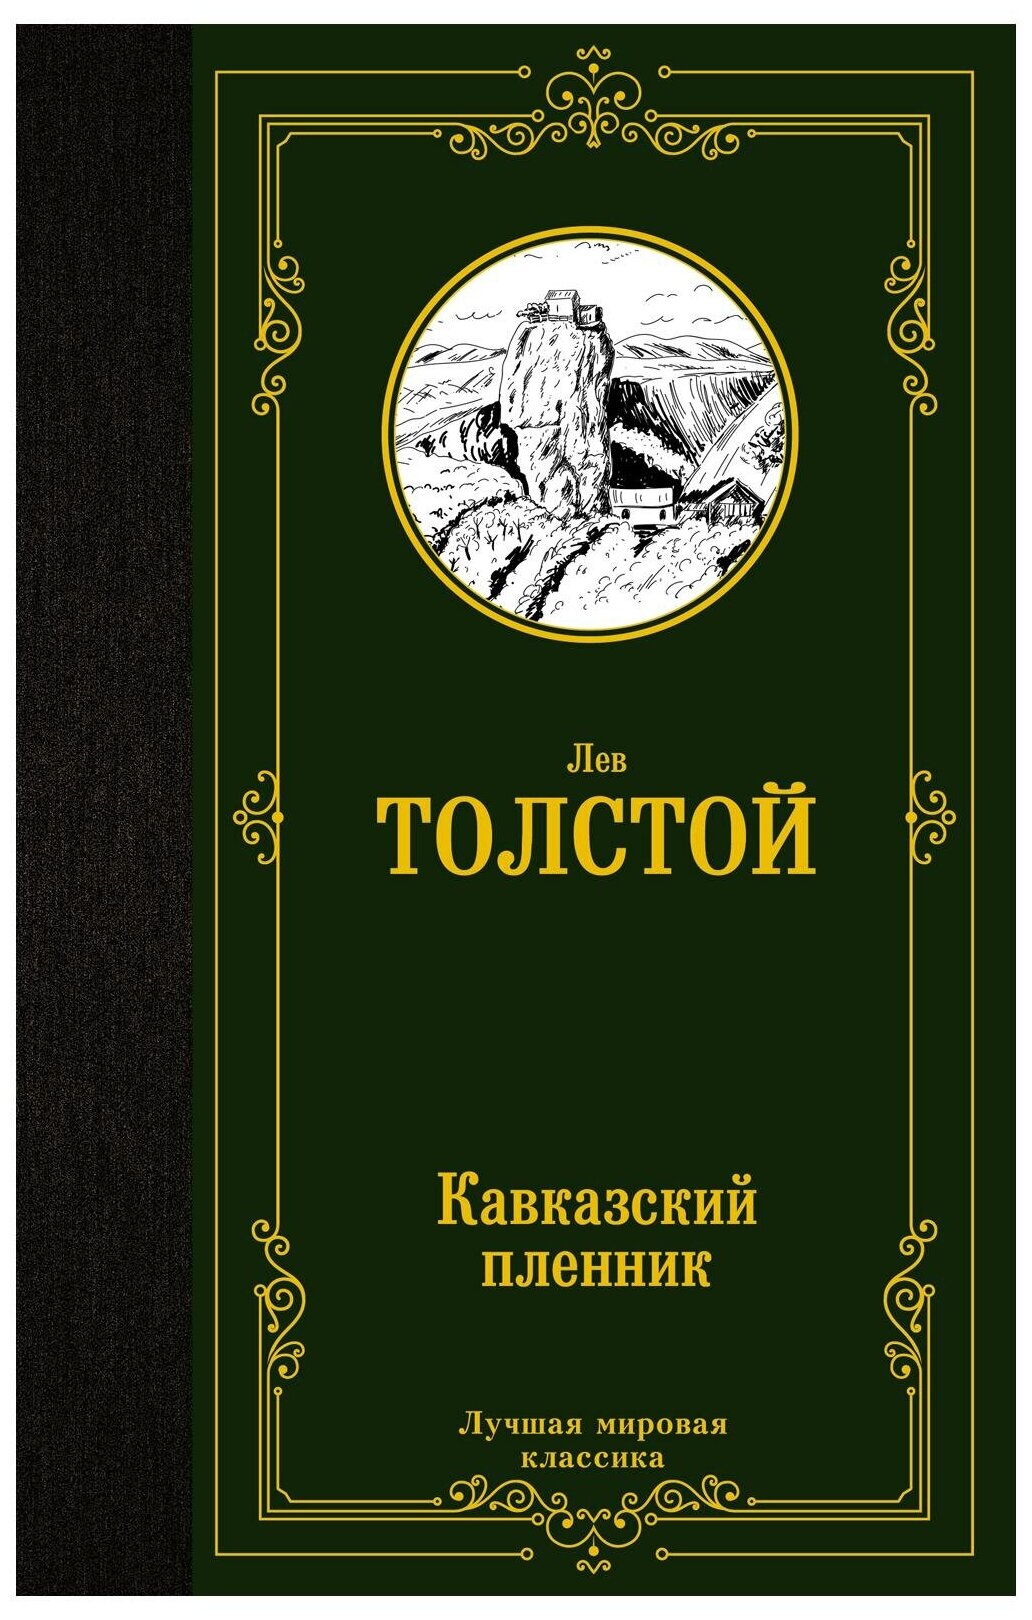 Кавказский пленник (Толстой Лев Николаевич) - фото №1